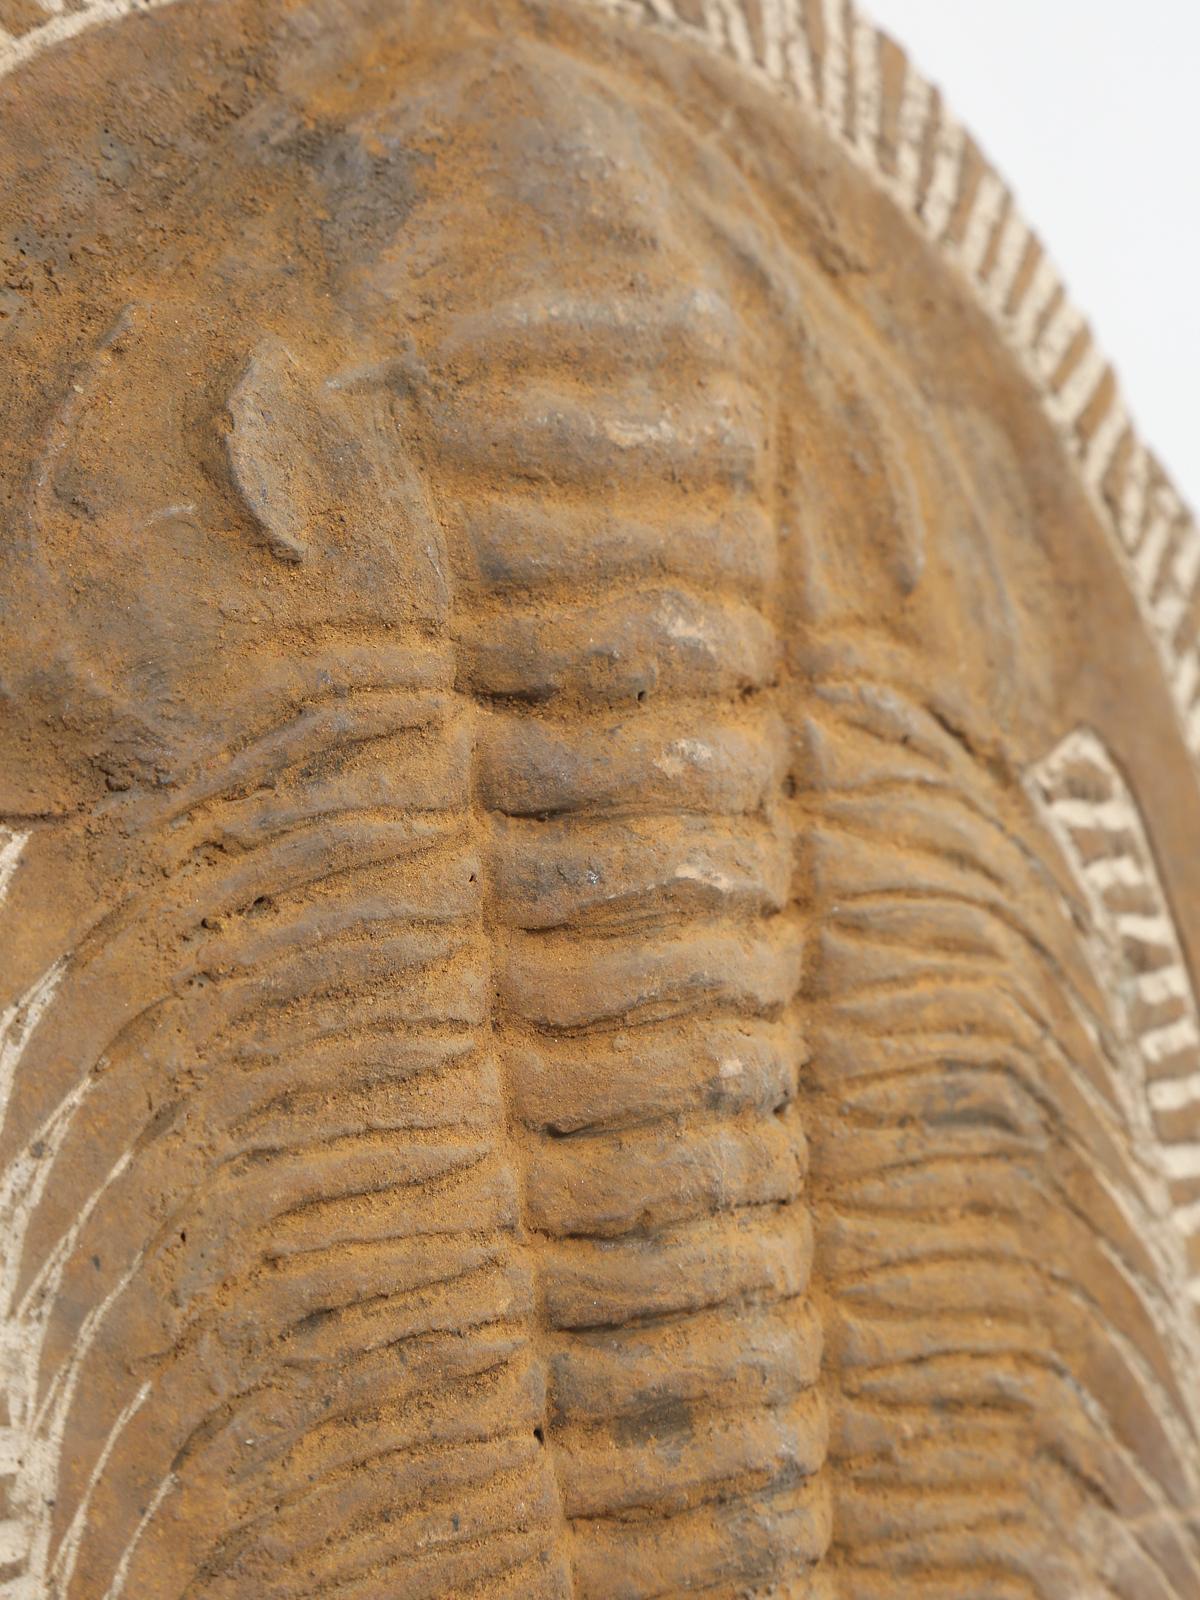 Moroccan Fossil of Cambropallas Trilobite from Paleozoic Era of the Cambrian Period